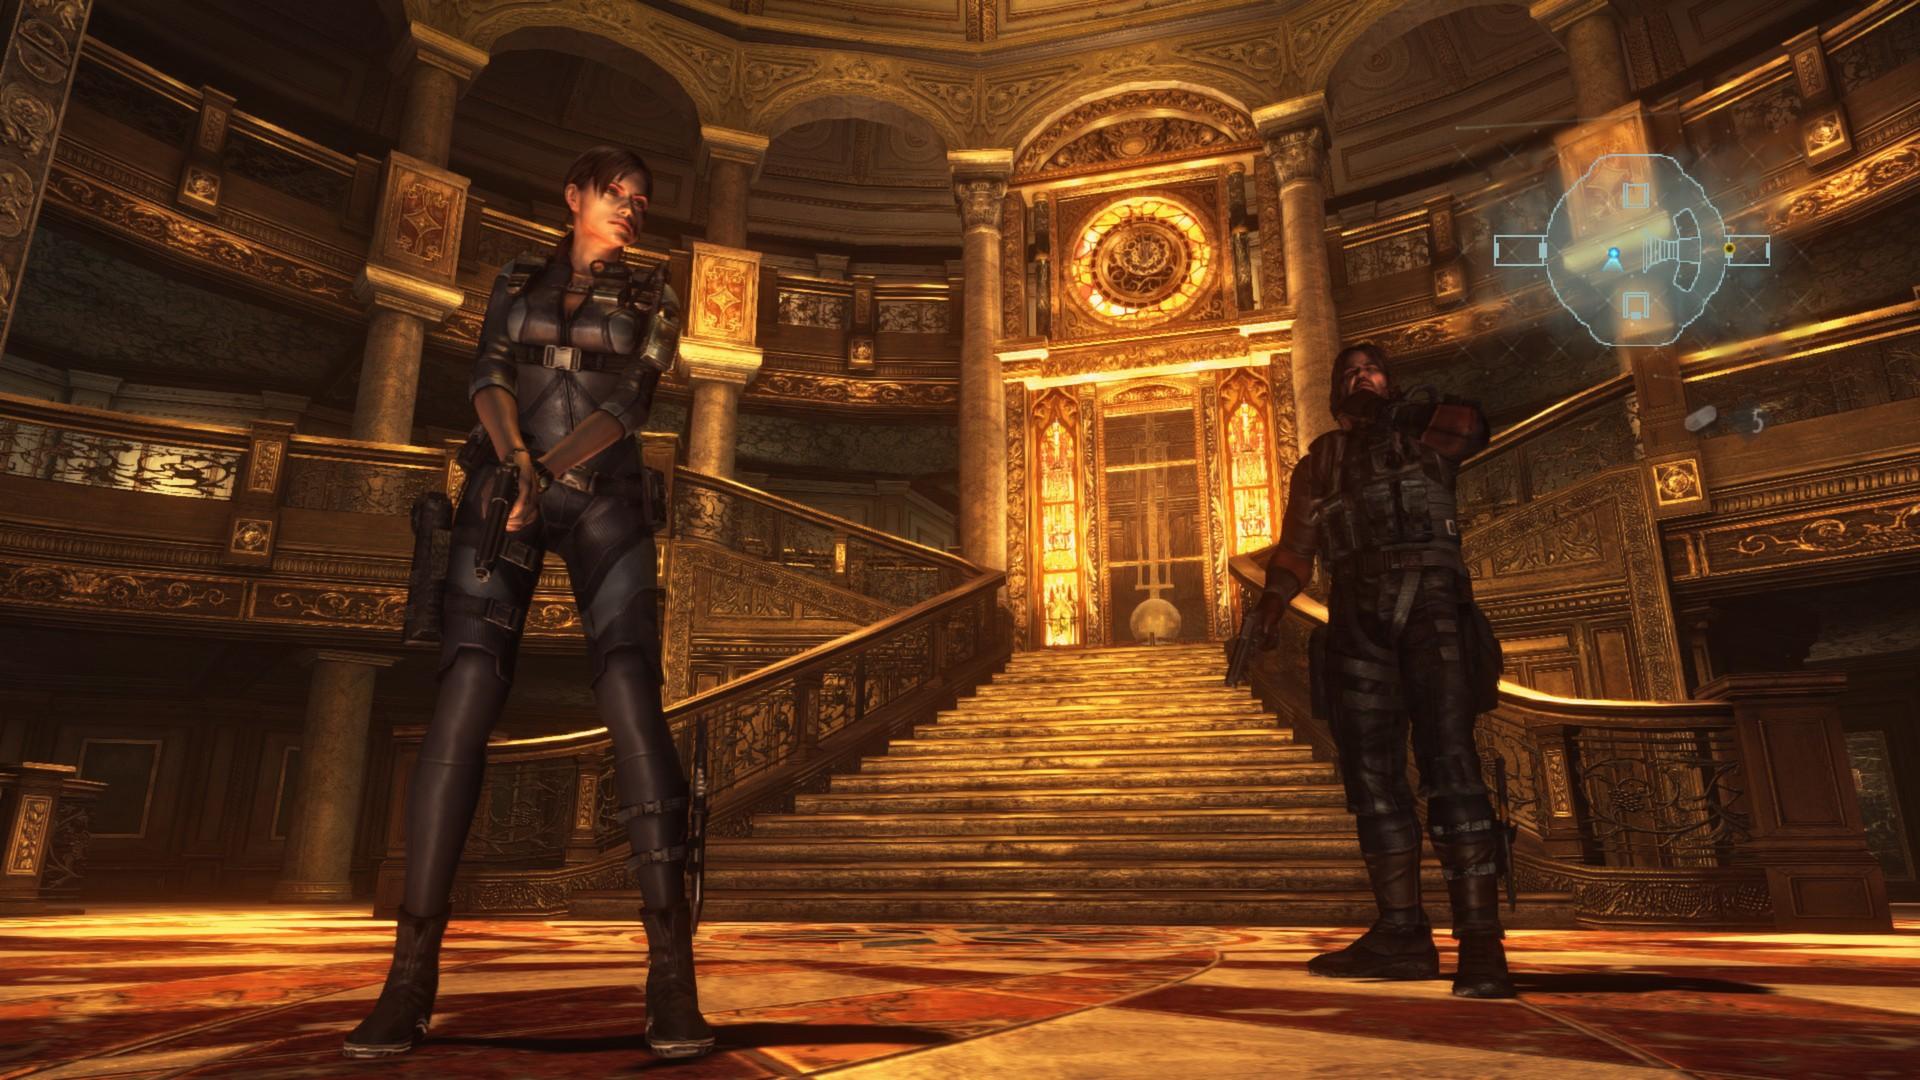 Screenshot №9 from game Resident Evil Revelations